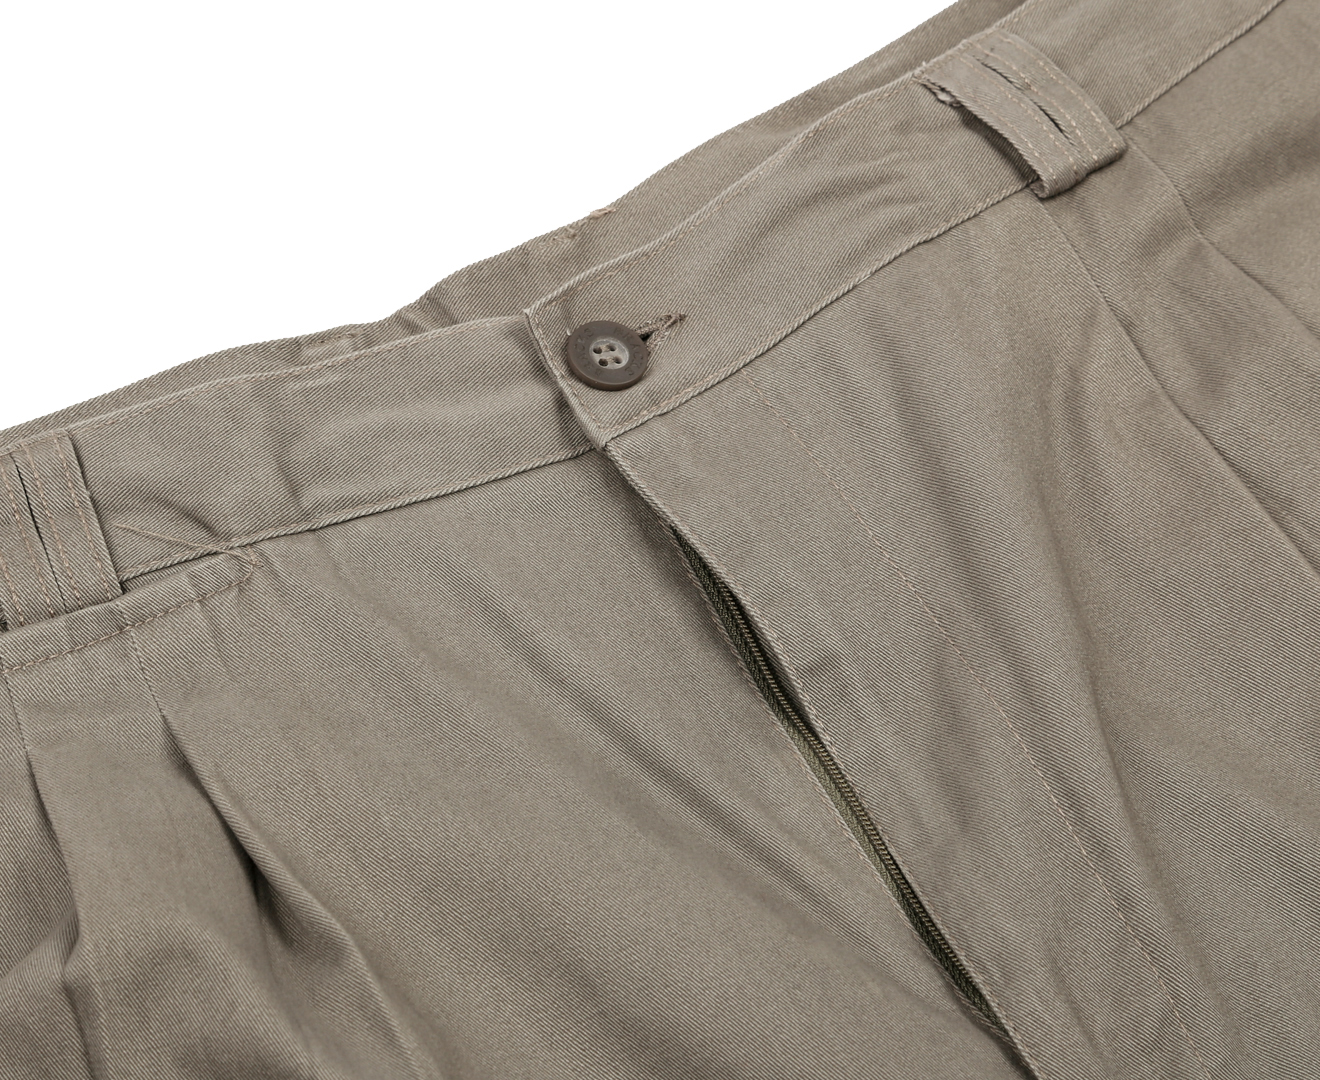 Bracks Casual Fit Ohio Trousers - Khaki | Catch.co.nz